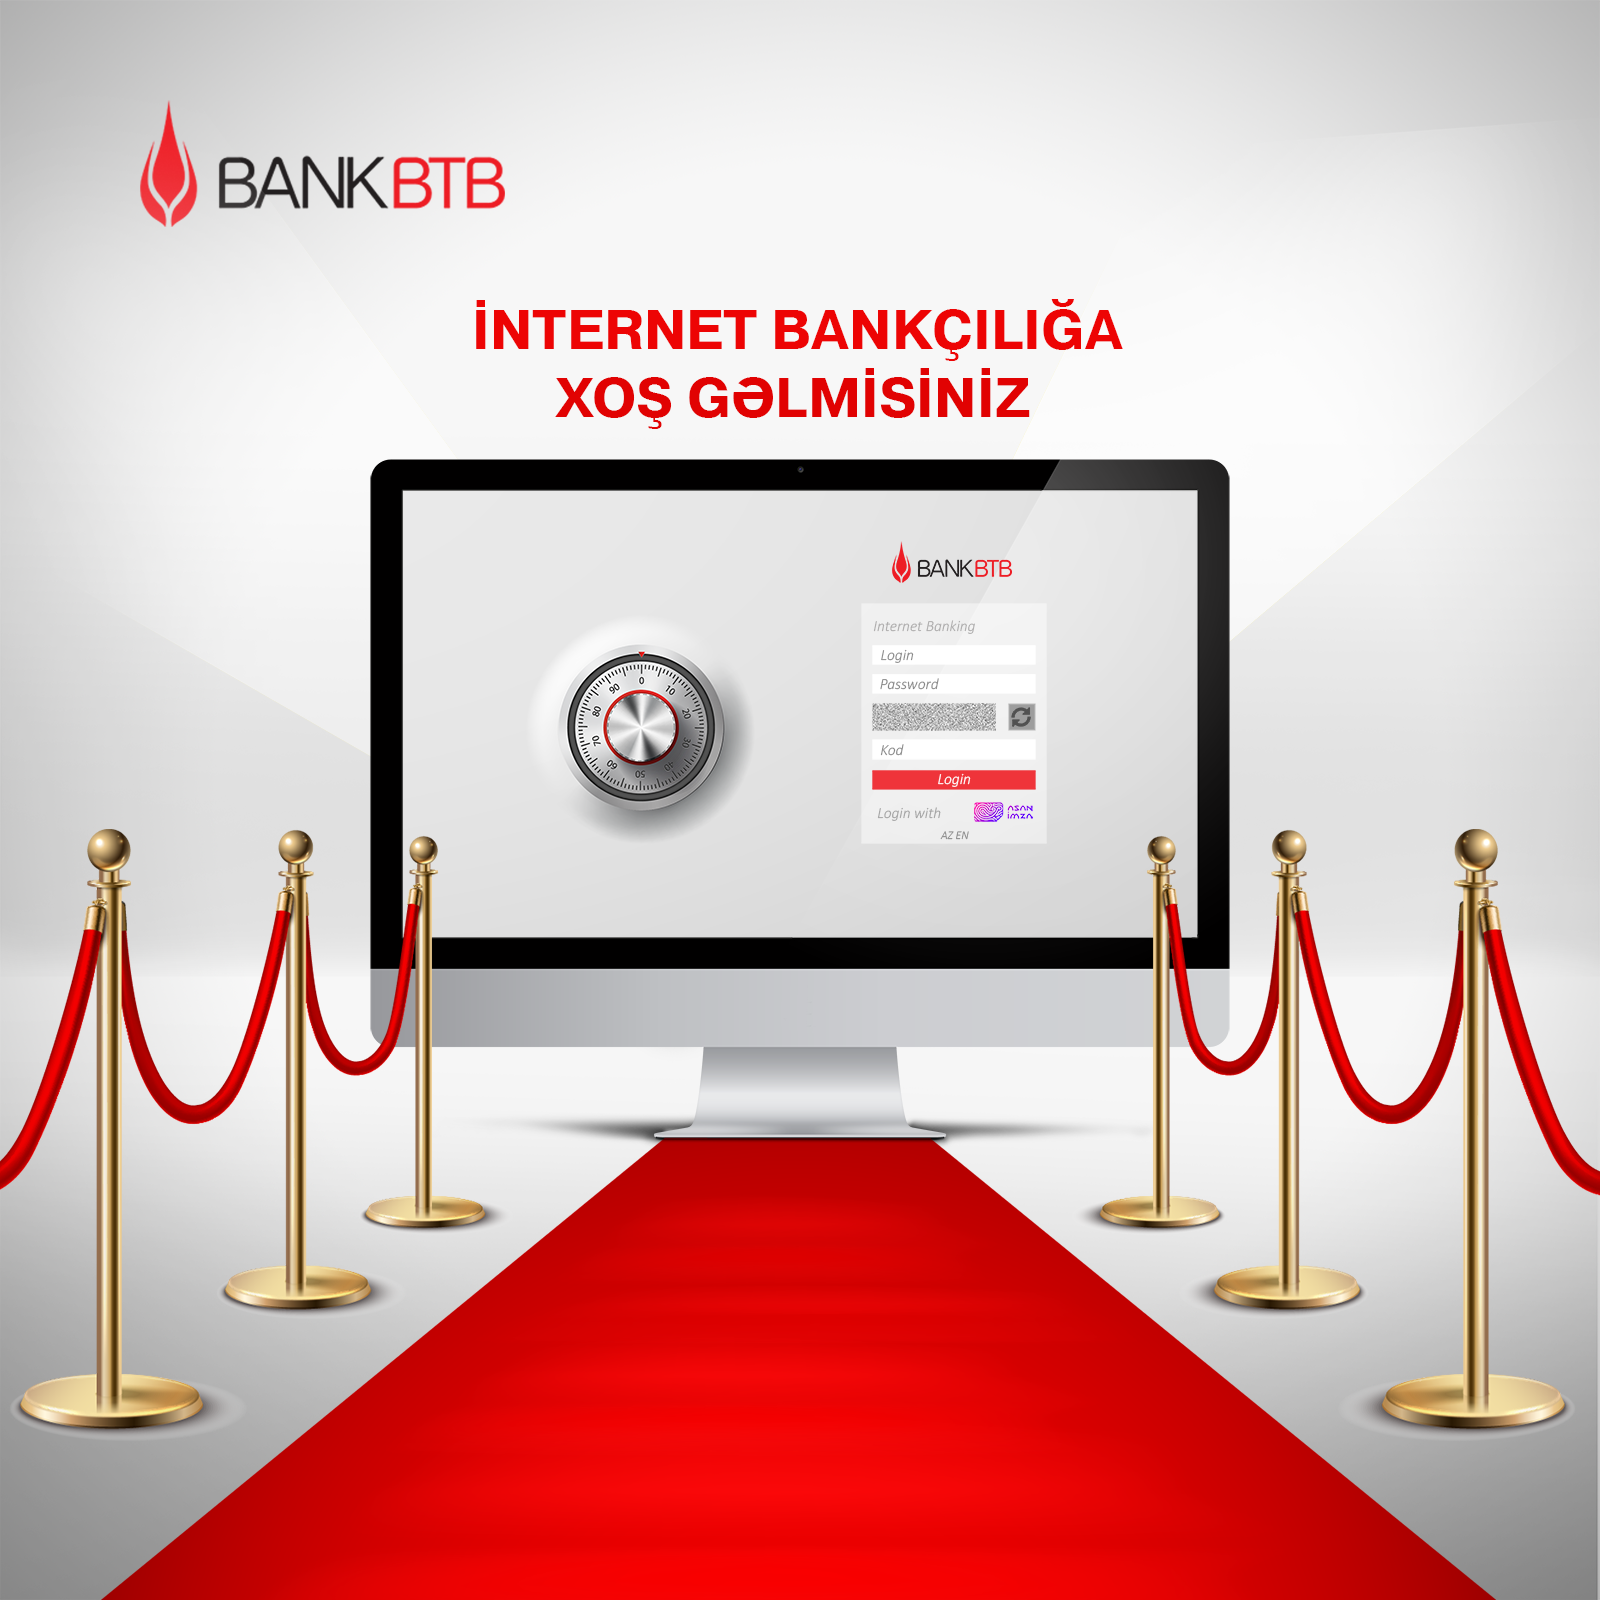 Bank BTB запустил обновленную услугу интернет-банкинга